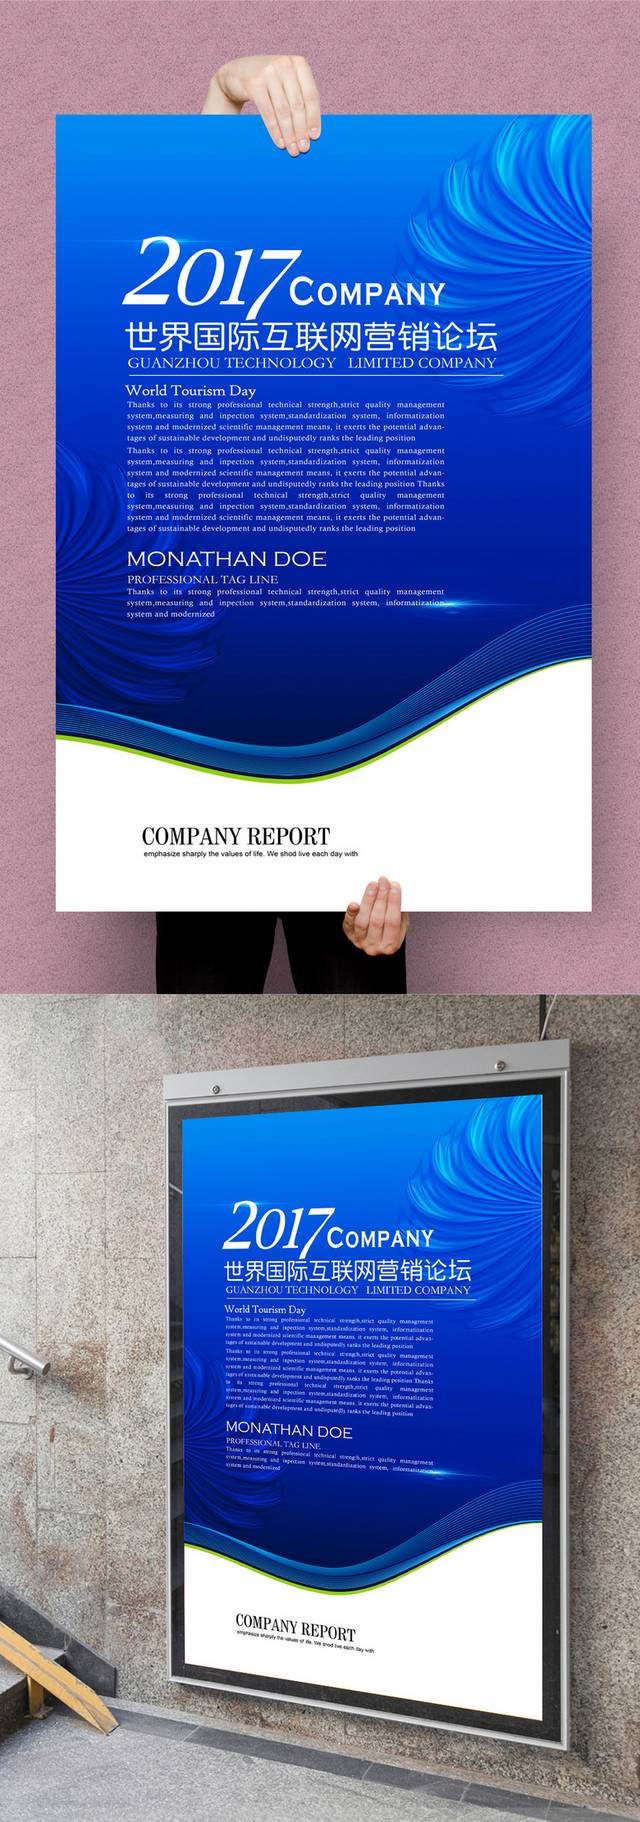 蓝色企业展板设计